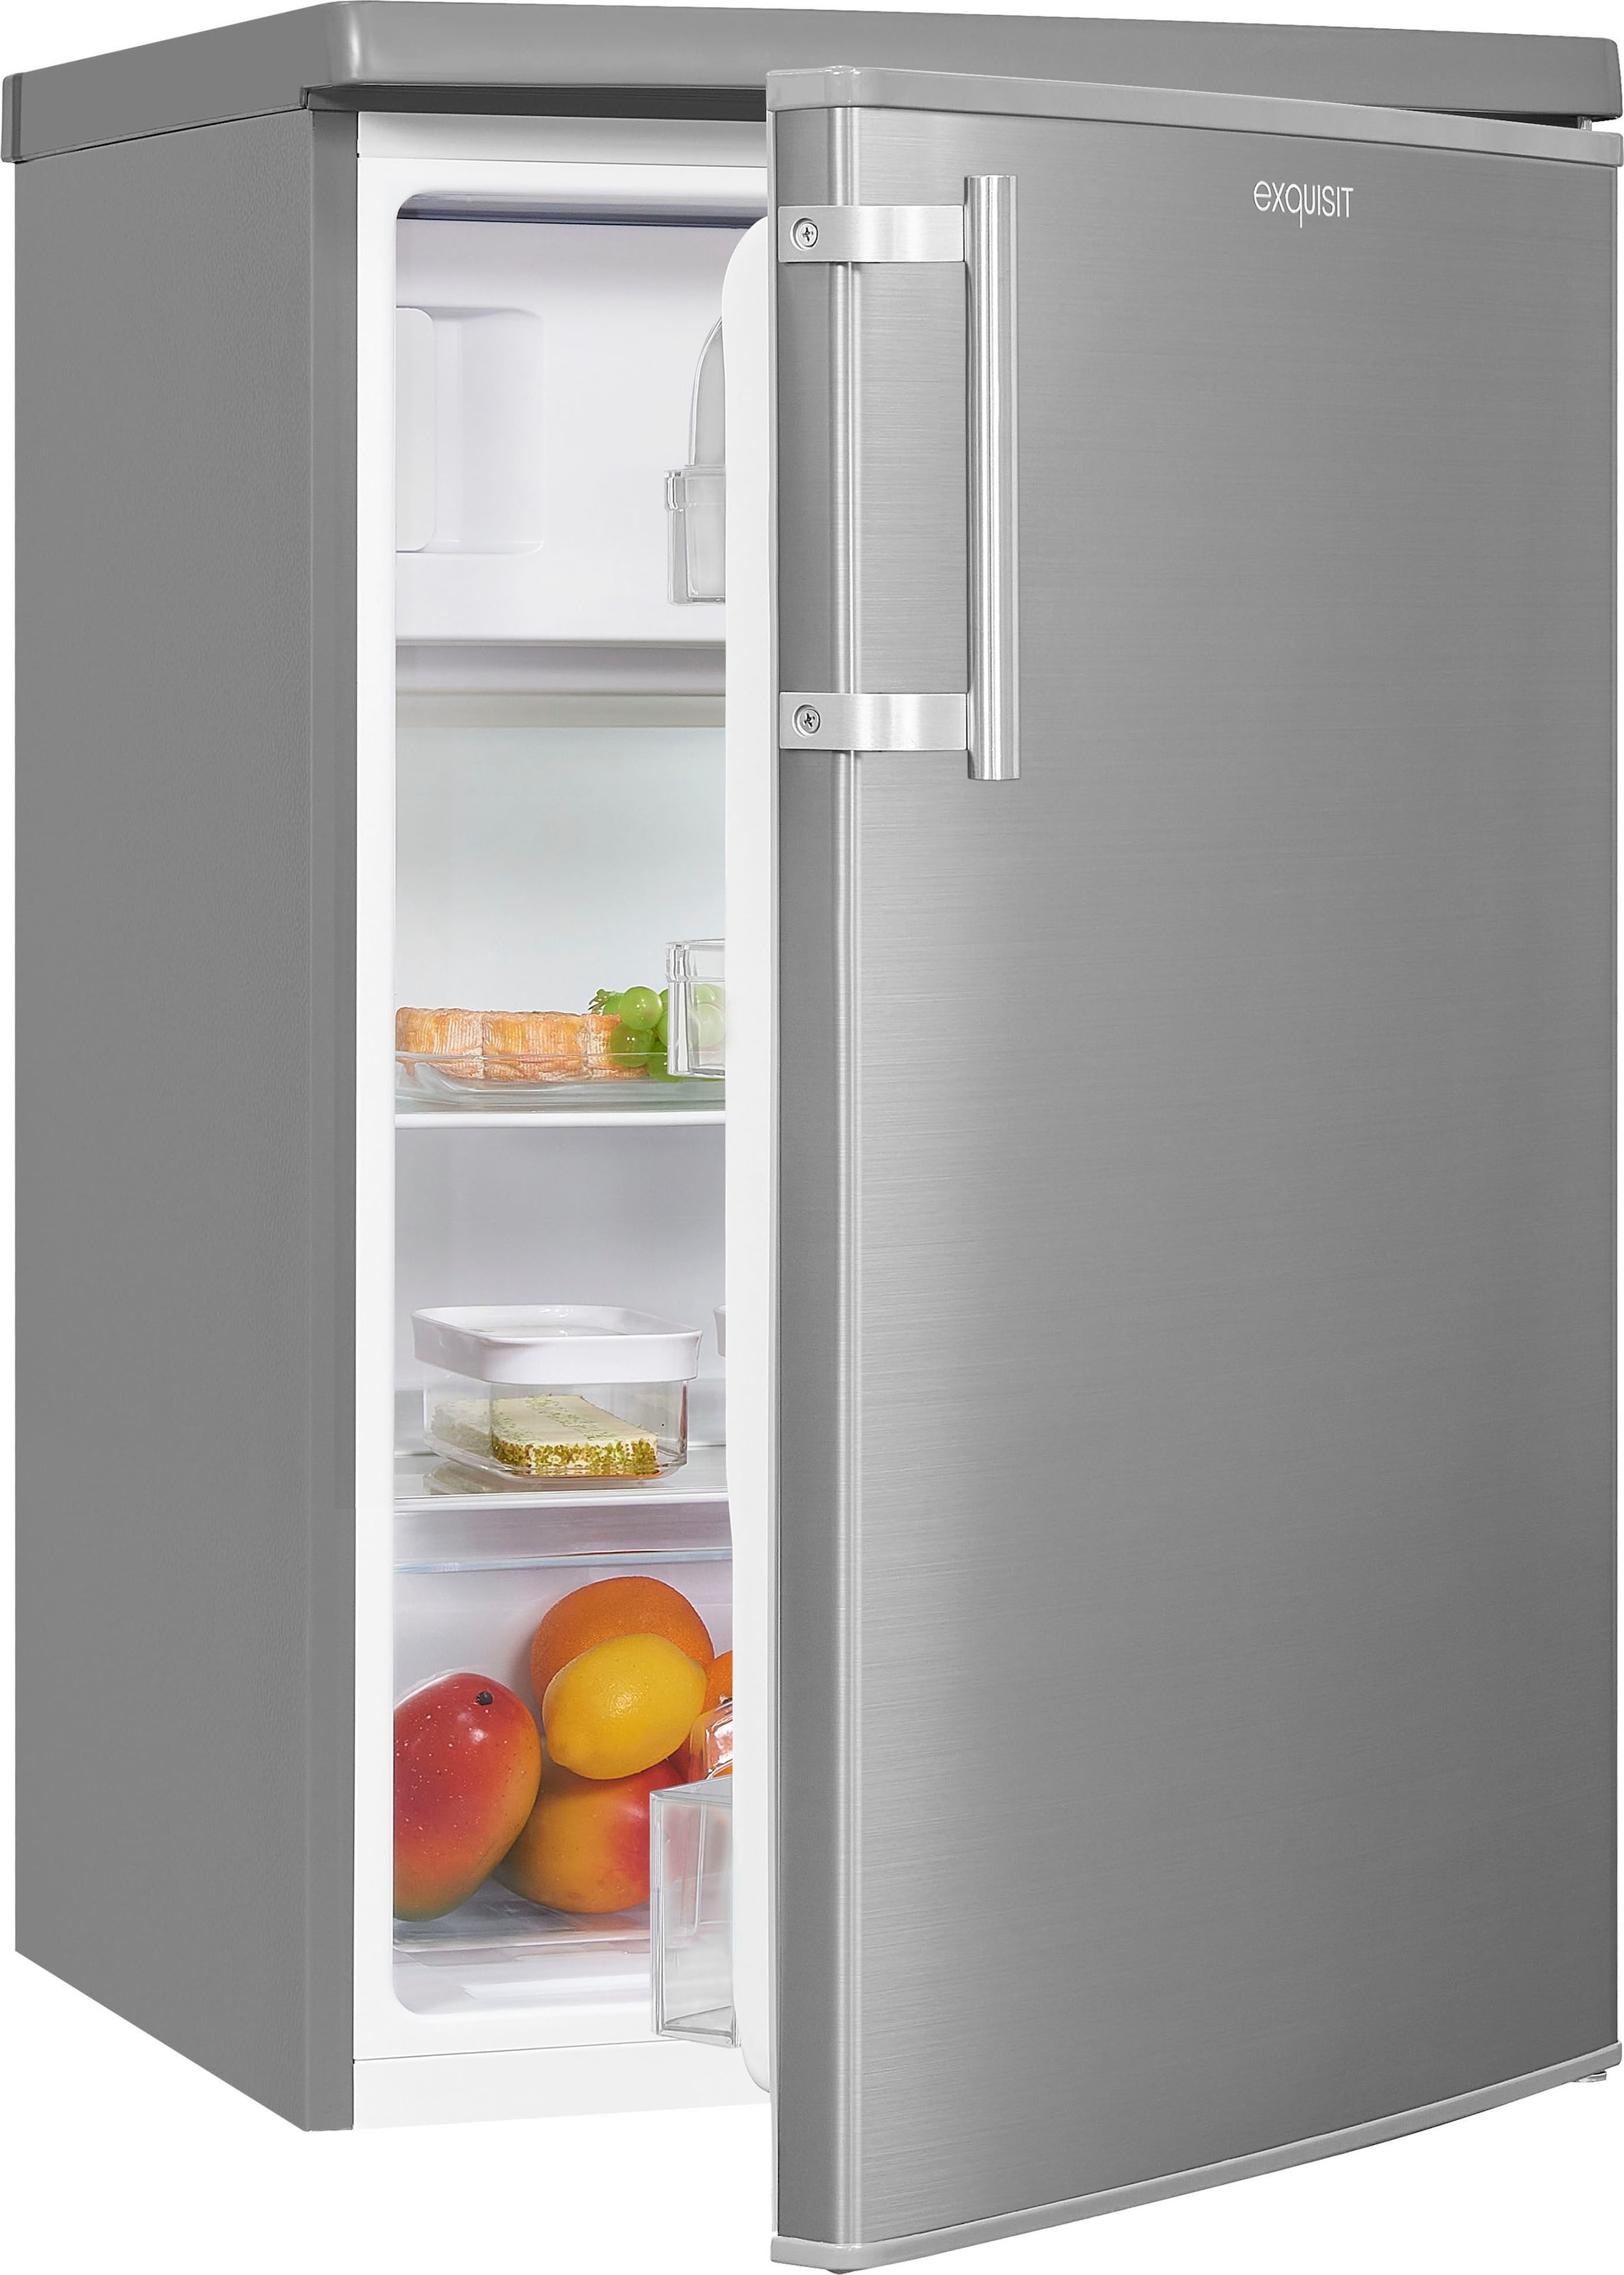 exquisit Kühlschrank, breit bei KS16-4-HE-040E jetzt inoxlook, OTTO cm cm 55,0 hoch, 85,5